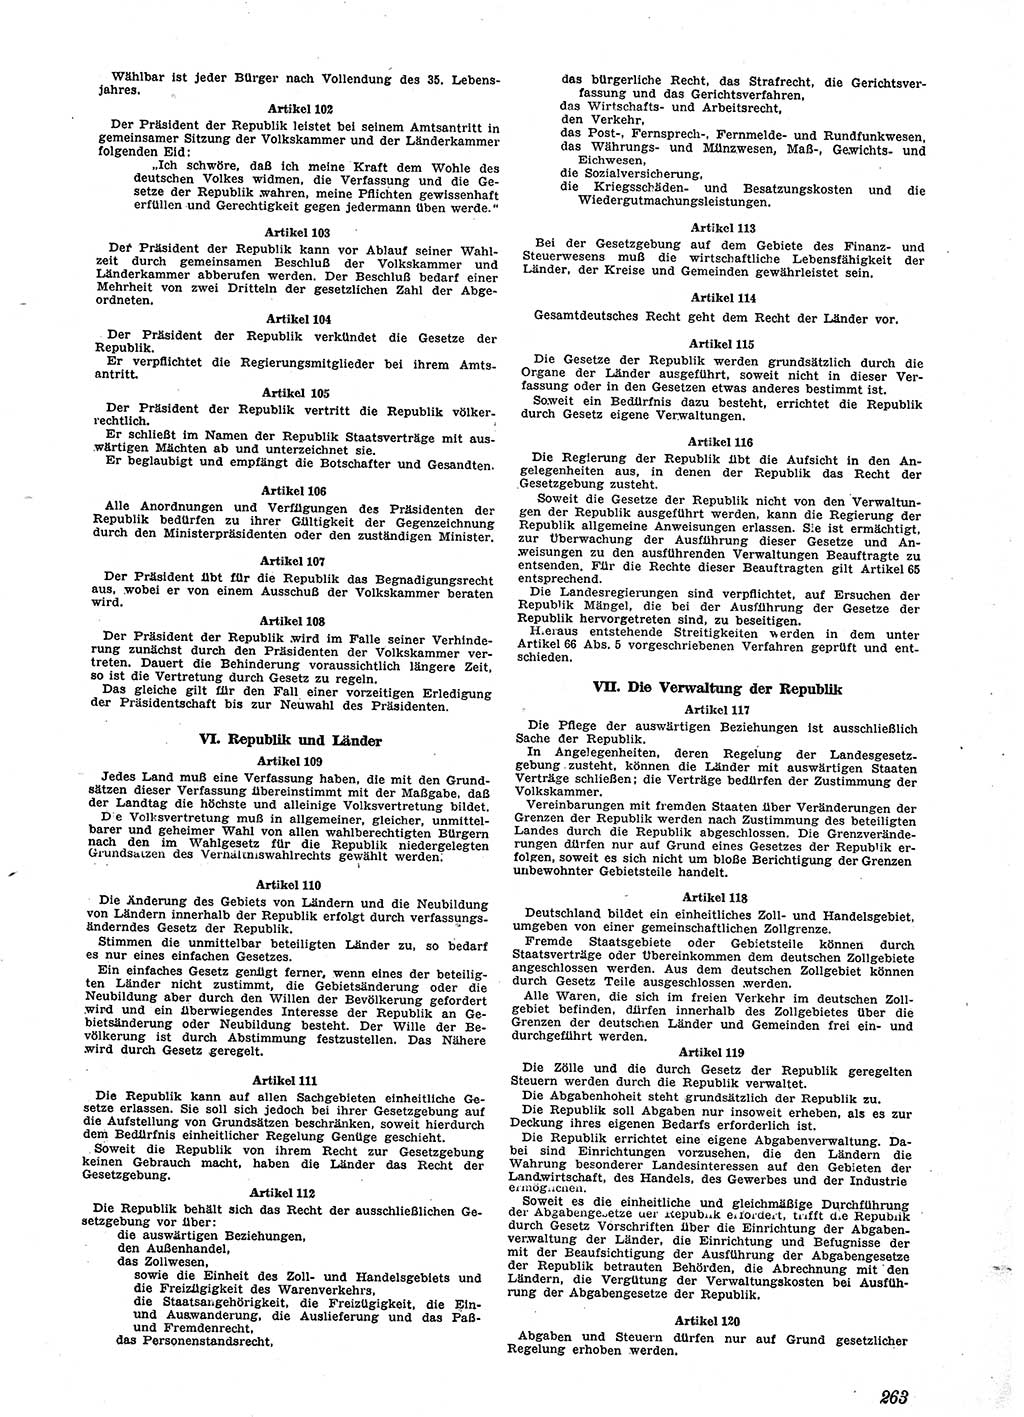 Neue Justiz (NJ), Zeitschrift für Recht und Rechtswissenschaft [Sowjetische Besatzungszone (SBZ) Deutschland], 2. Jahrgang 1948, Seite 263 (NJ SBZ Dtl. 1948, S. 263)